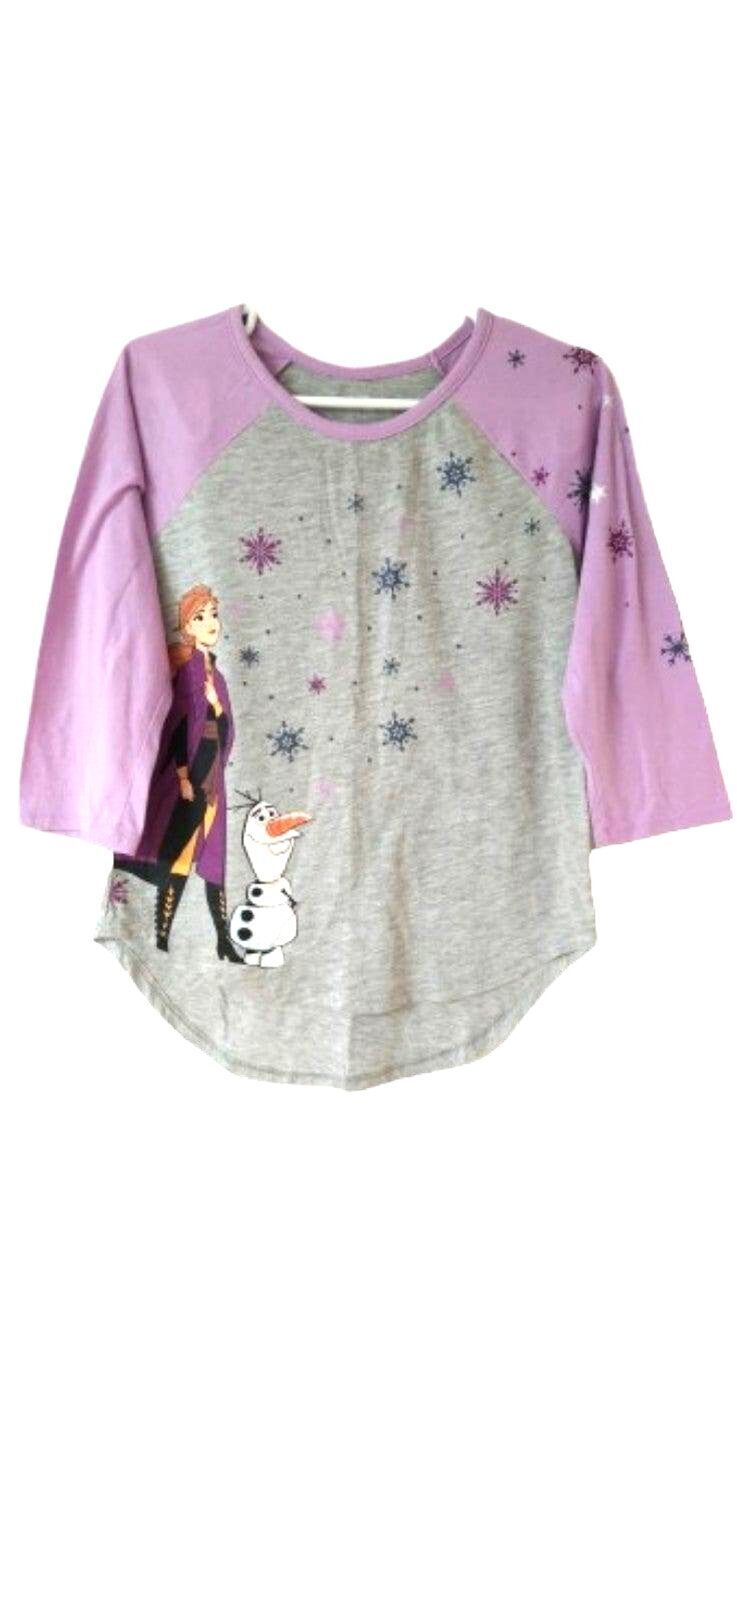 Frozen Disney M 3/4 sleeves girls blouse purple gray sleepwear size M - $11.00